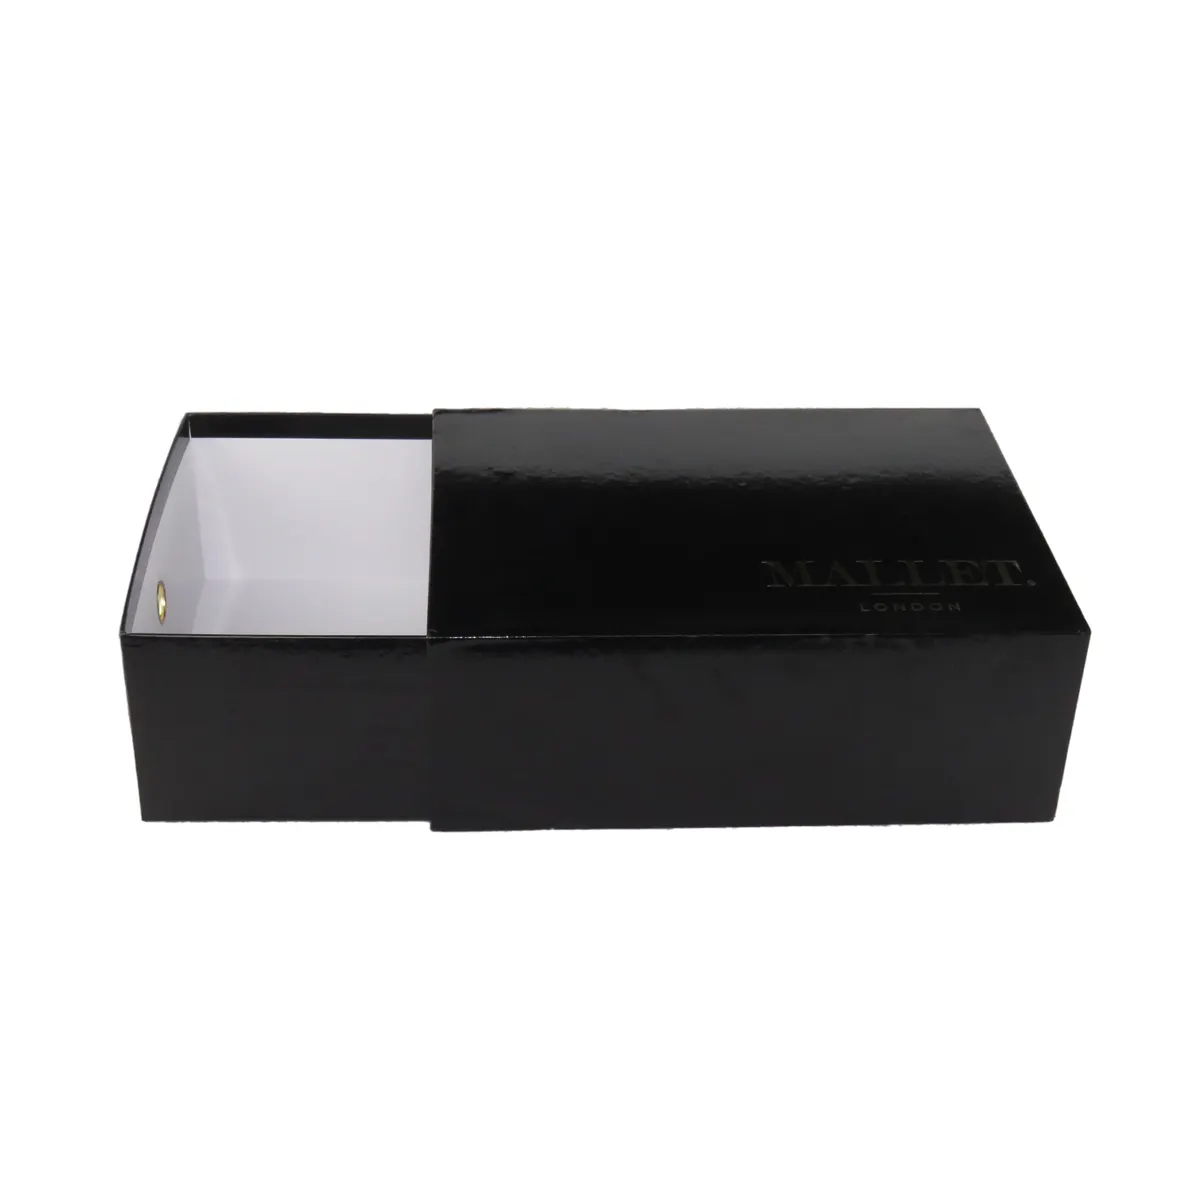 Besace — baskets à tiroir noir Unique, boîte en carton pour emballage De chaussures